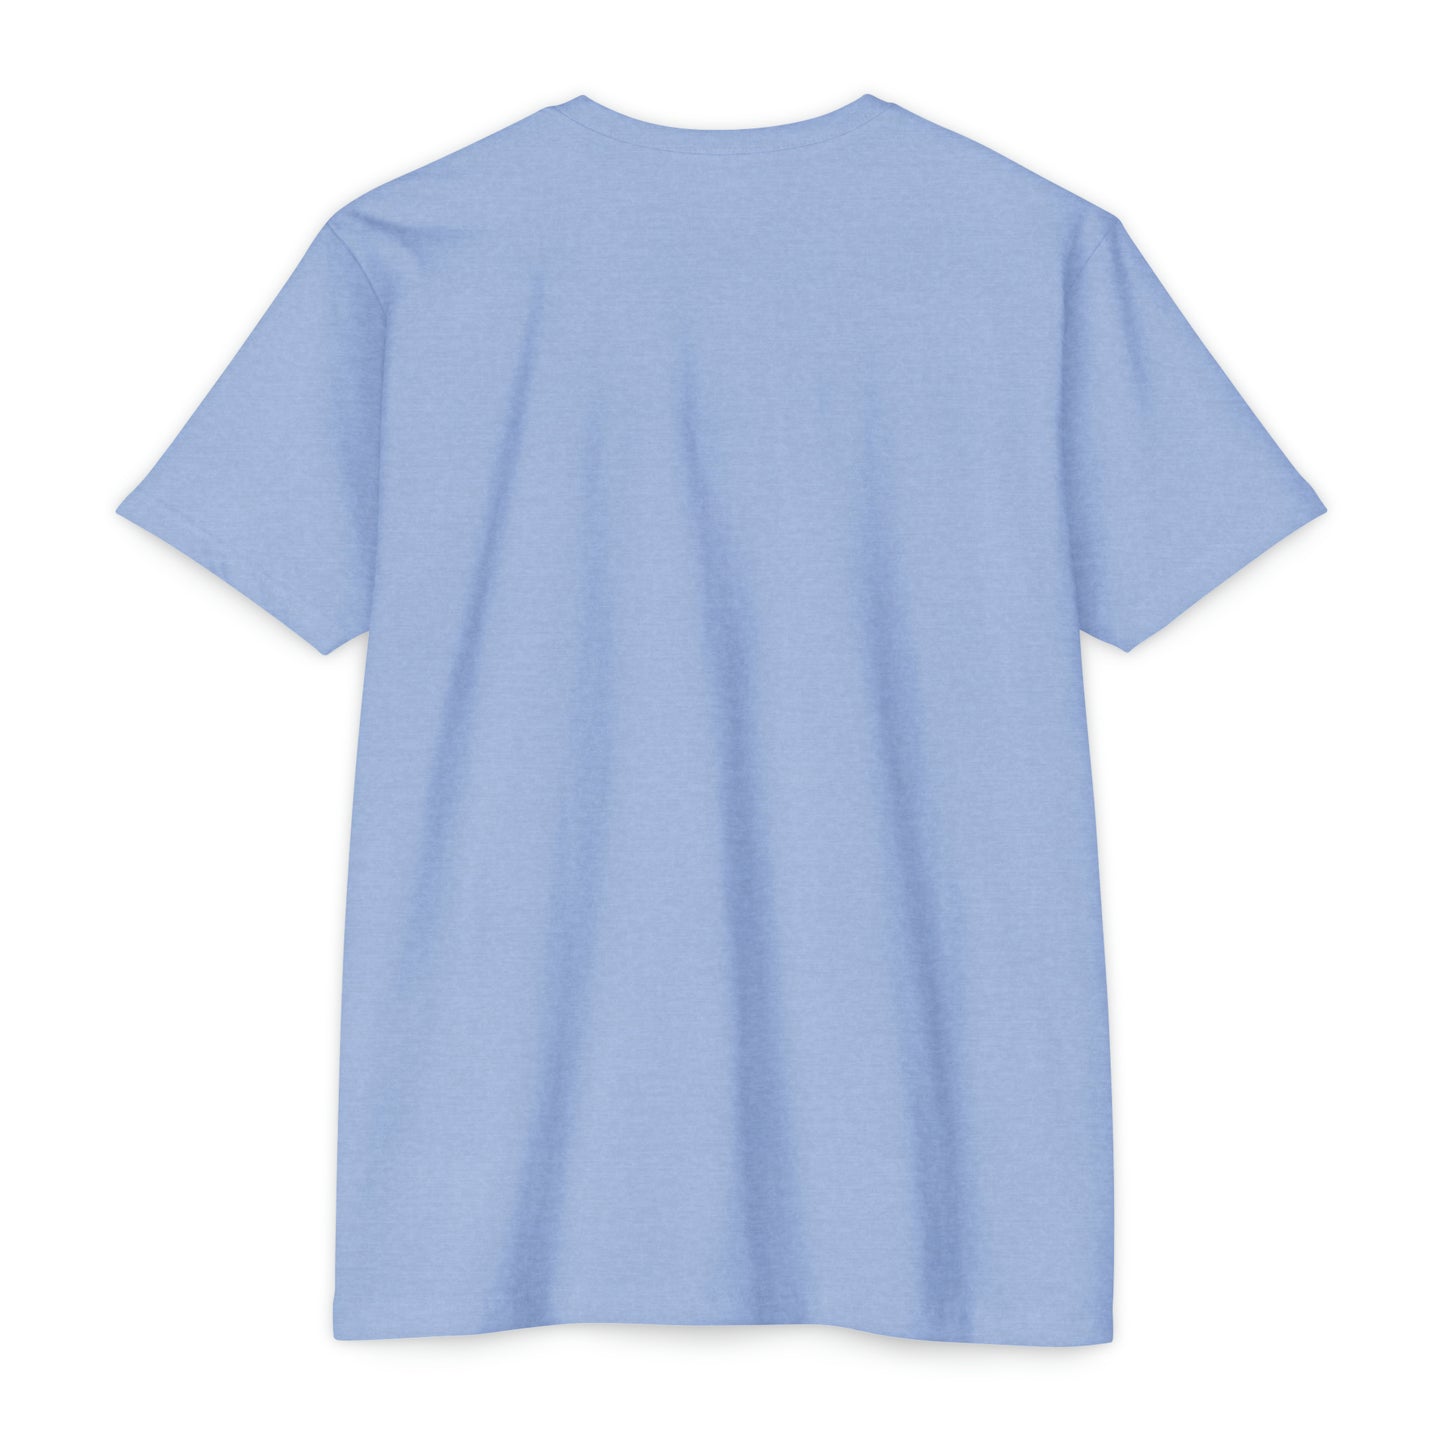 A 1 A ,  Unisex CVC Jersey T-shirt